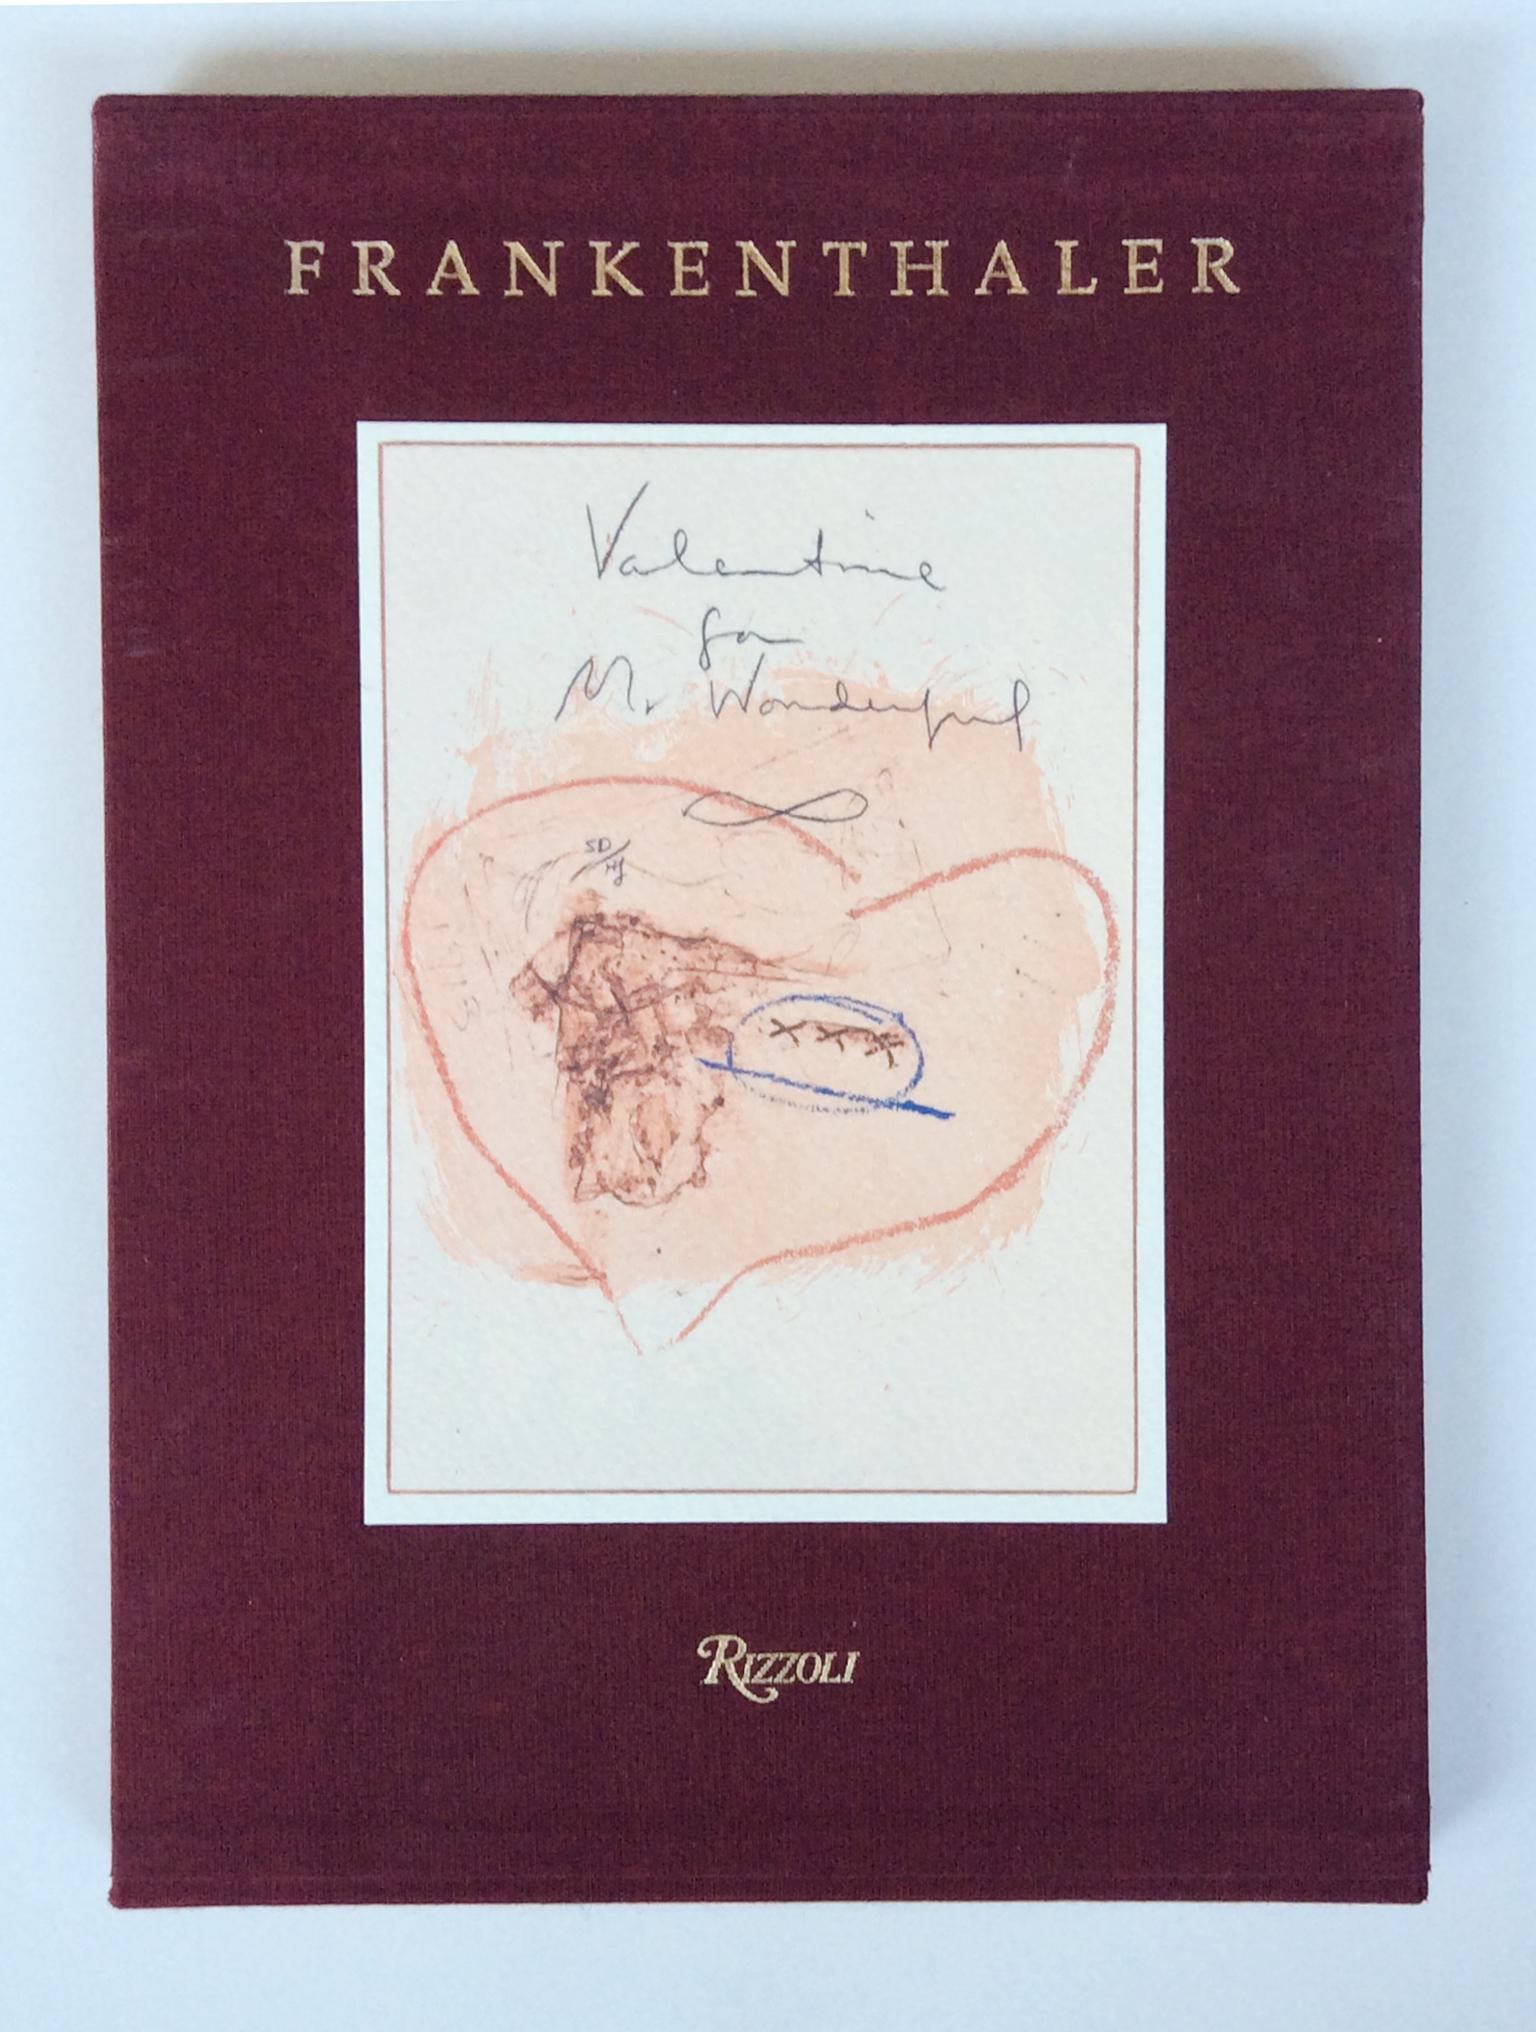 Signed Helen Frankenthaler Book of Intaglio Prints, 